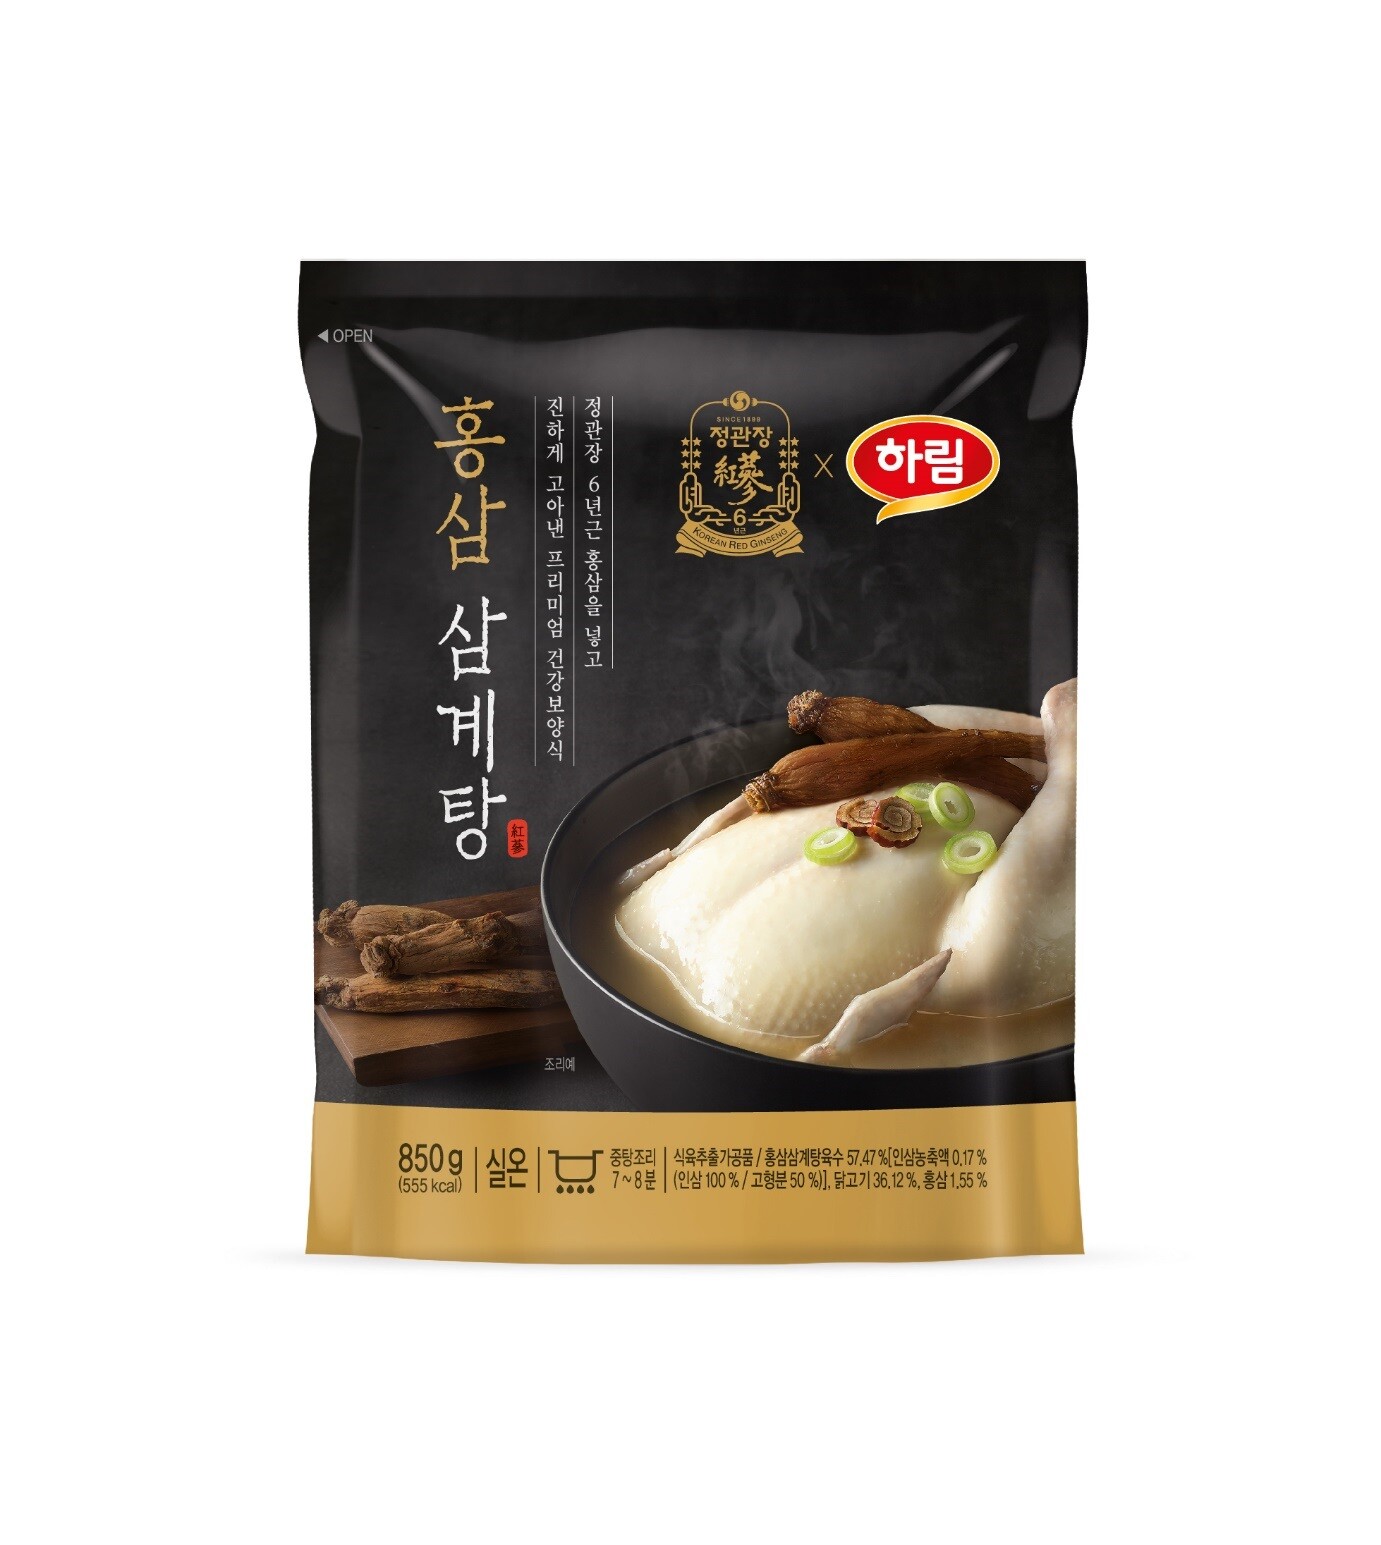 "จองควานจาง" แบรนด์โสมเกาหลีชั้นนำ ขอเสนอผลิตภัณฑ์ไก่ตุ๋นโสมแดง อาหารบำรุงกำลังยอดนิยมในหน้าร้อน